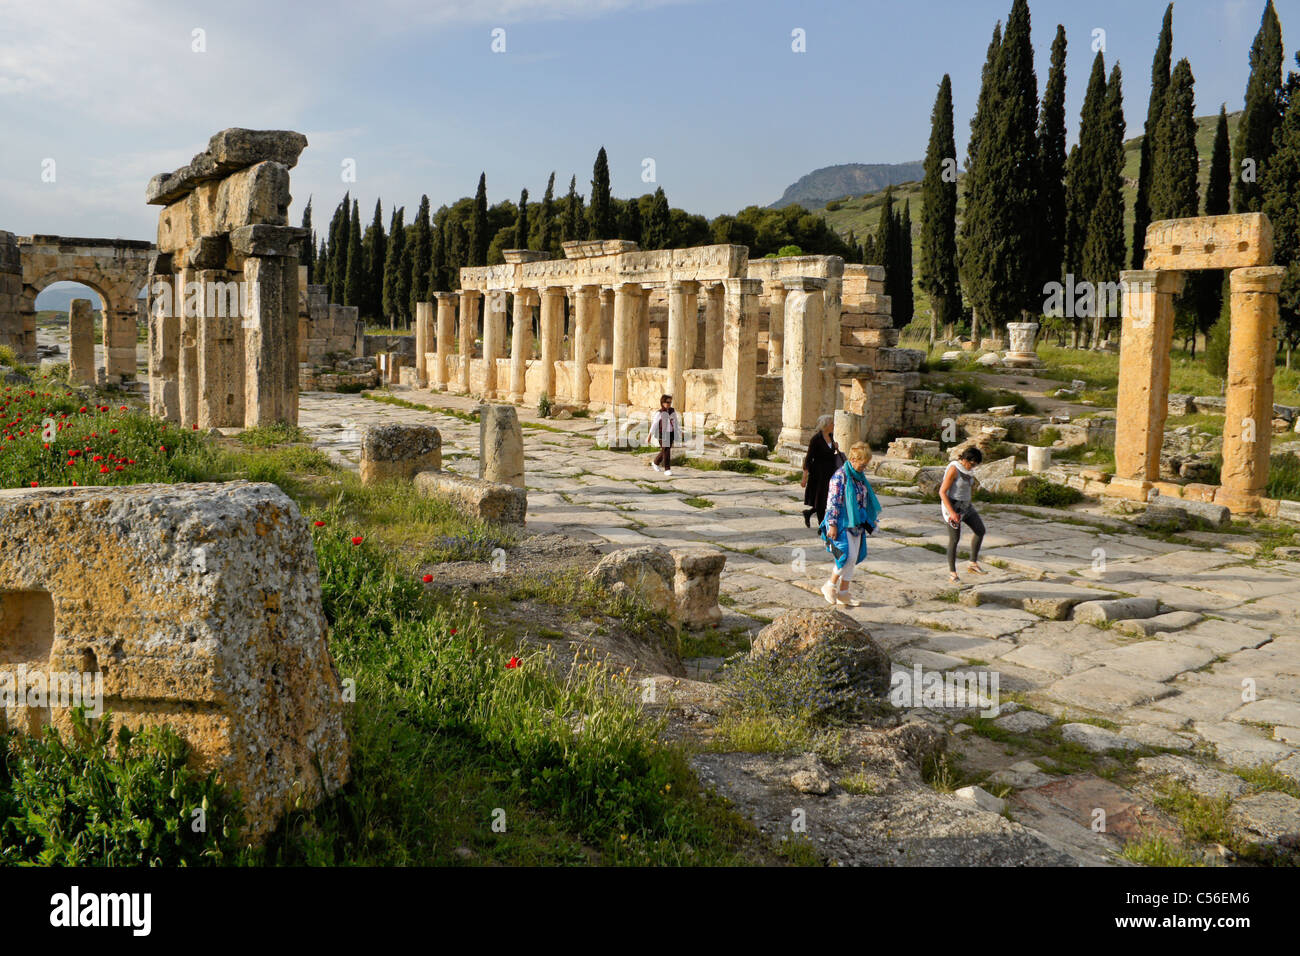 La rue à colonnade et de latrines, Hierapolis-Pamukkale, Turquie Banque D'Images